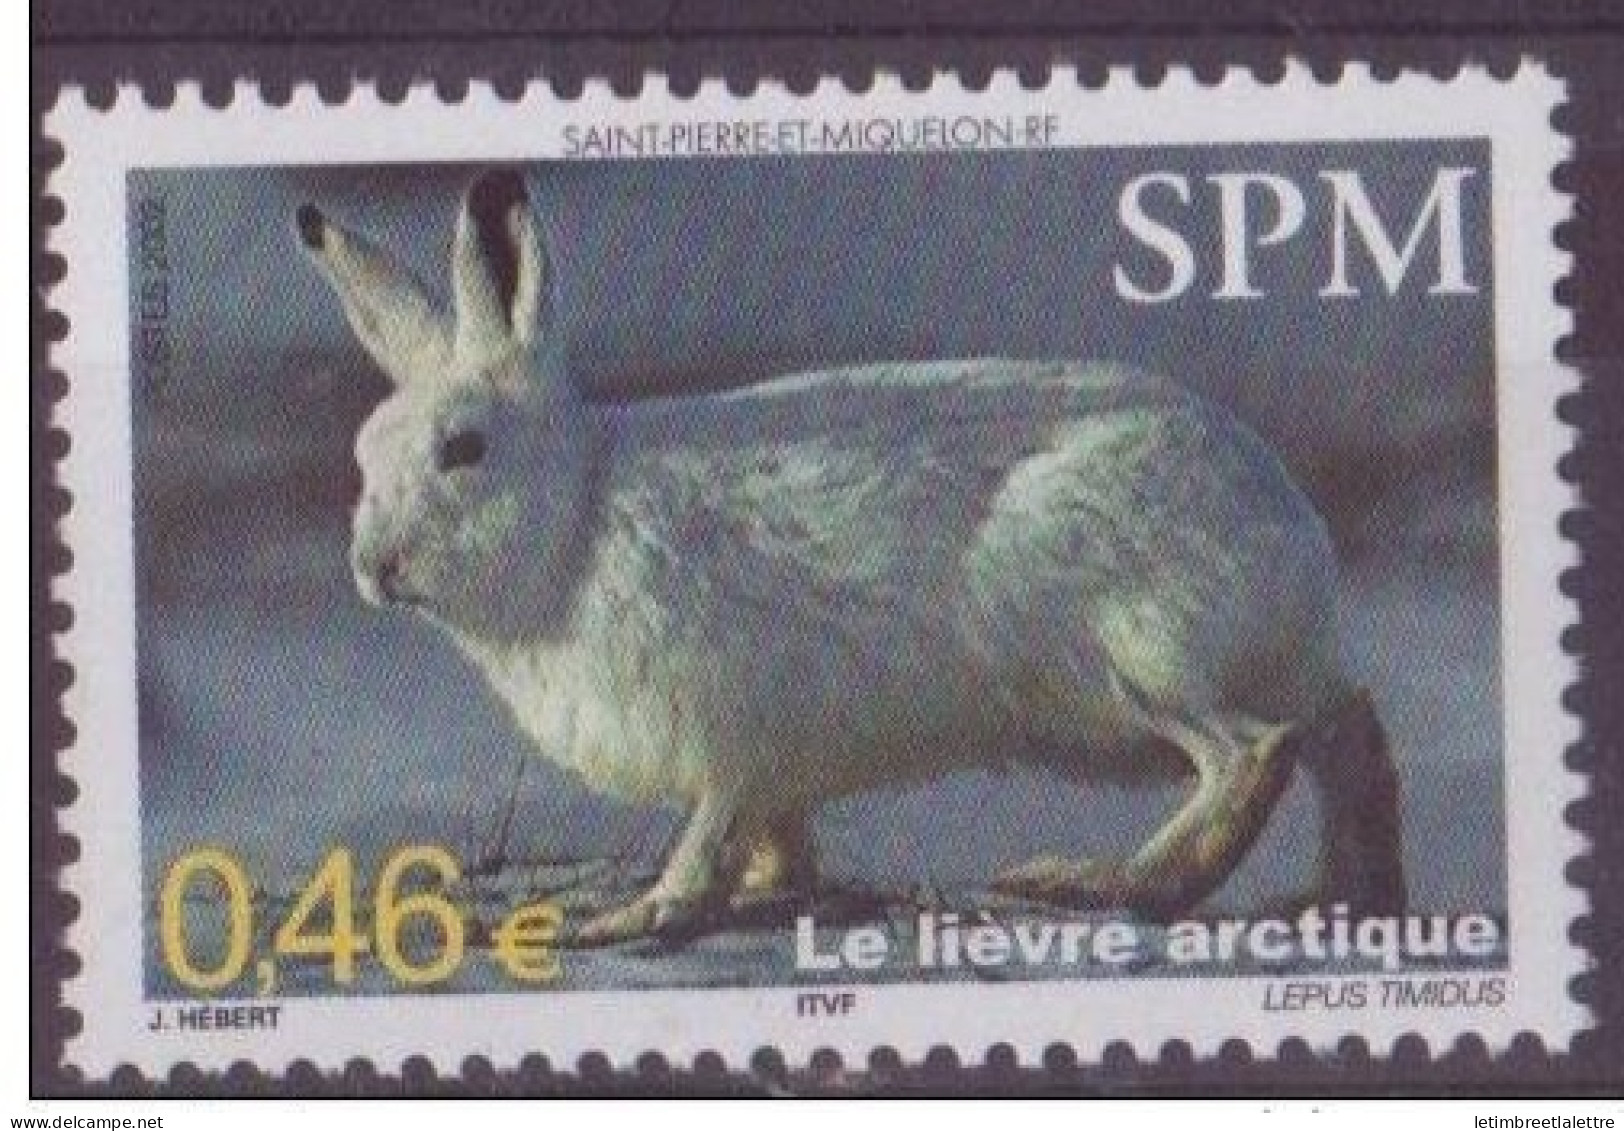 Saint Pierre Et Miquelon - YT N° 782 ** - Neuf Sans Charnière - 2002 - Ungebraucht